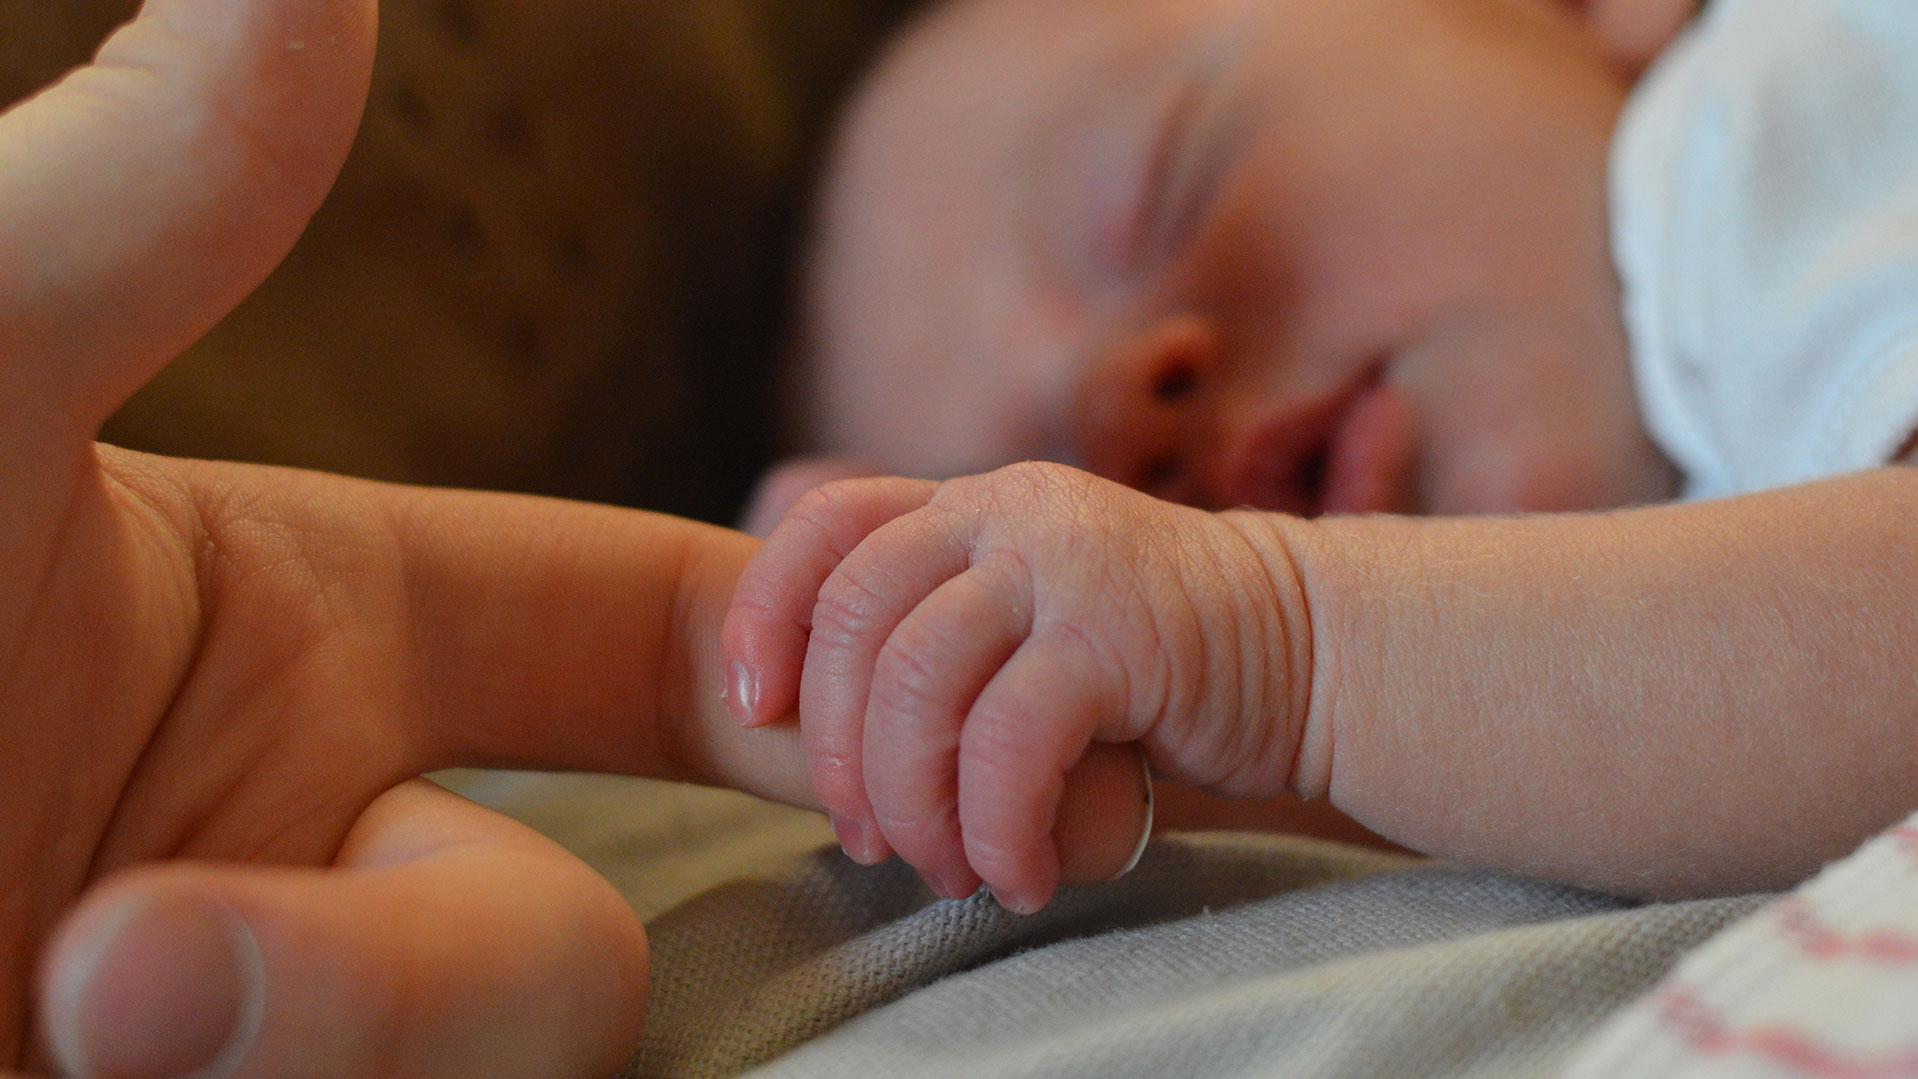 Säugling umklammert mit der kleinen Hand einen Zeigefinger eines Erwachsenen